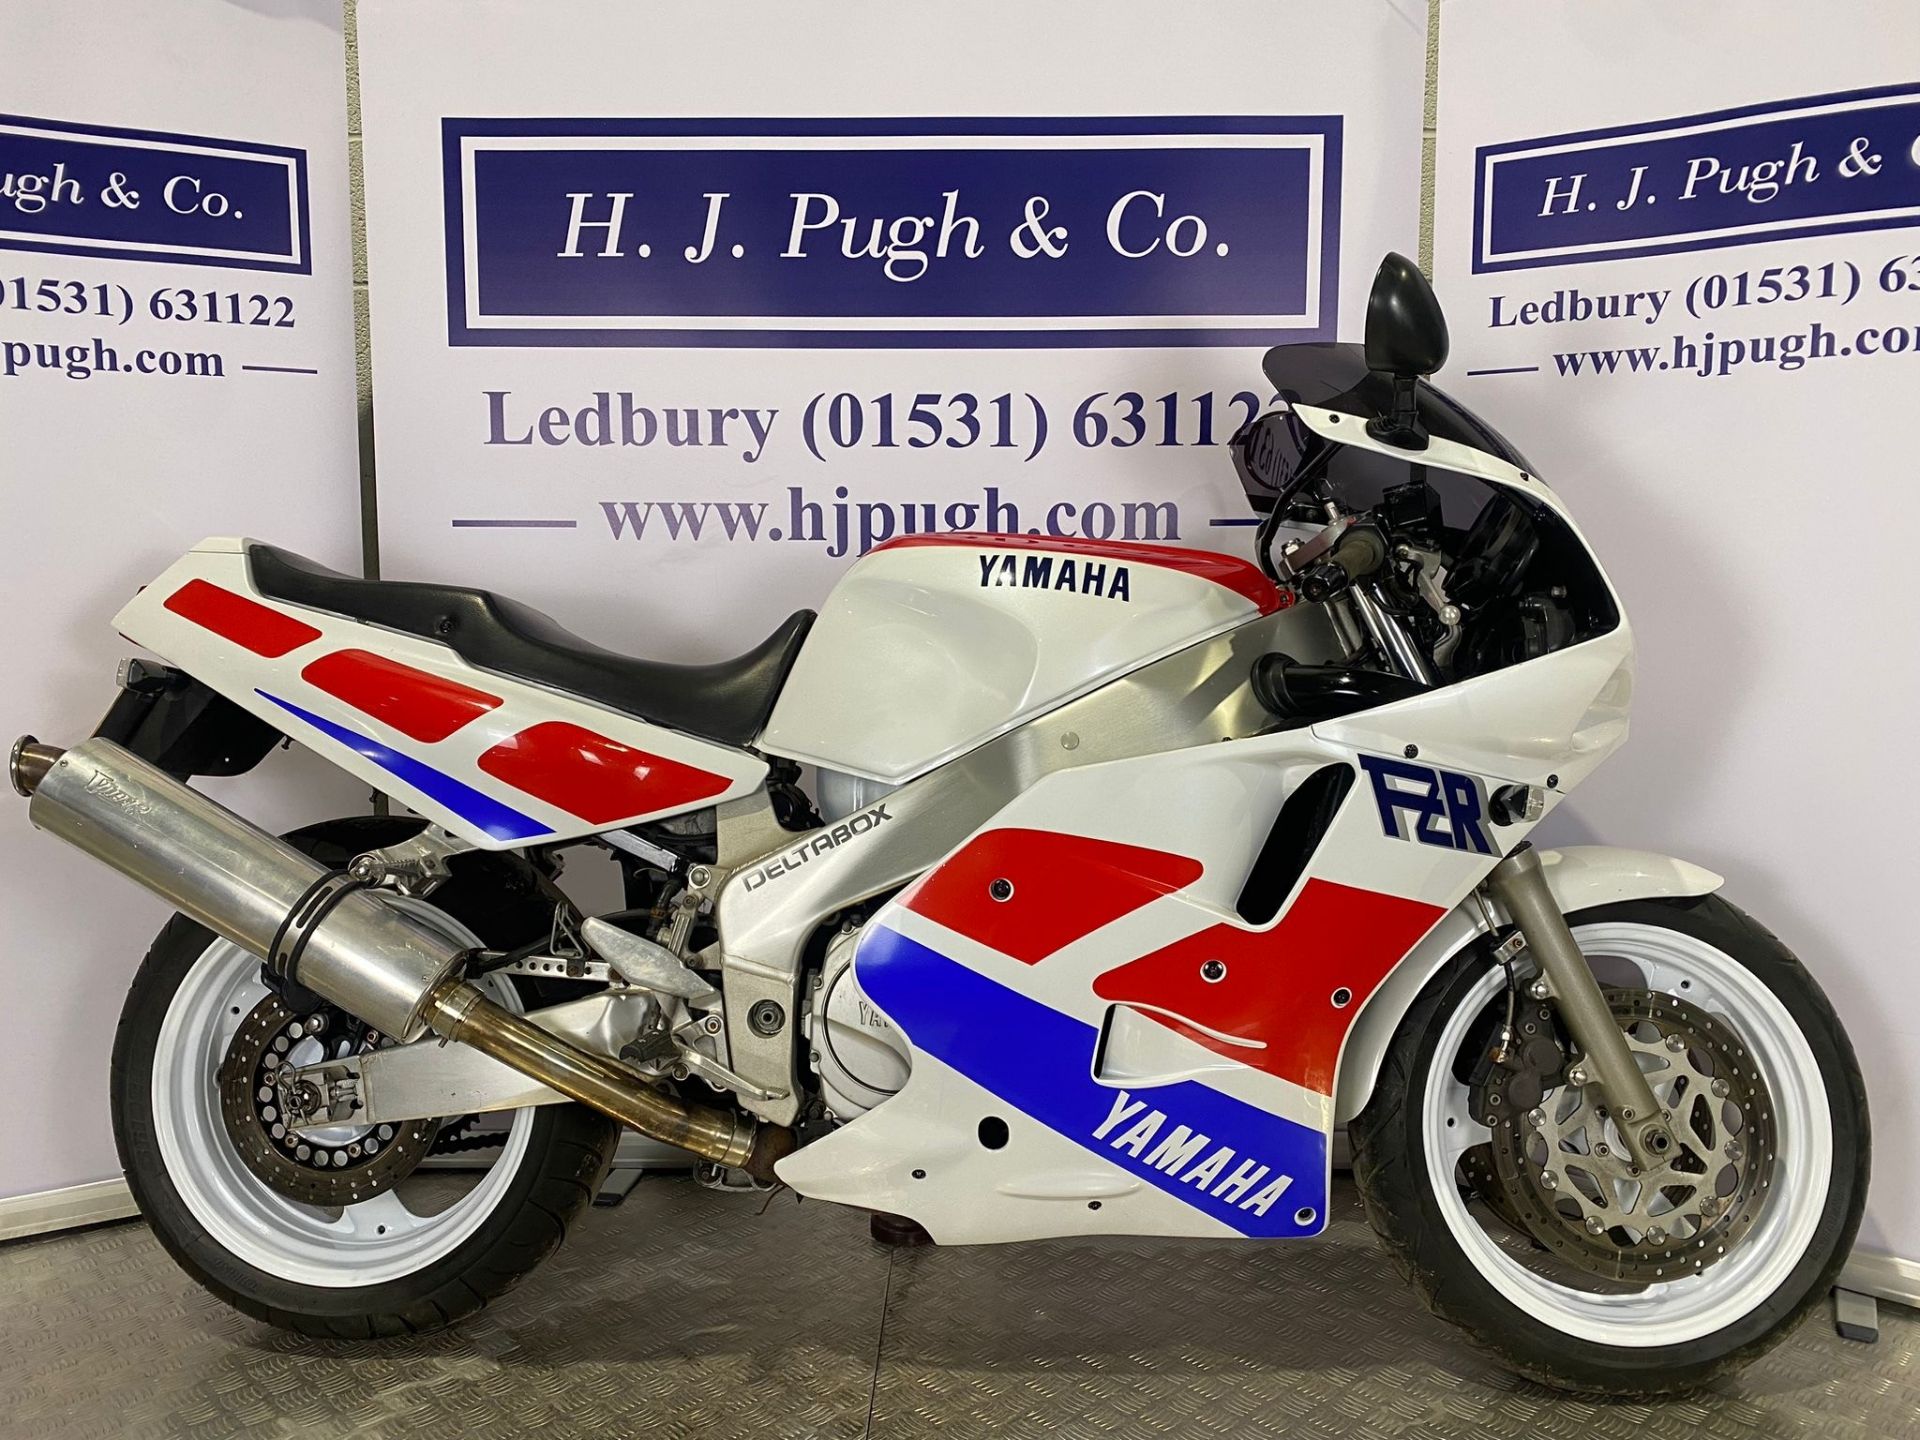 Yamaha FZR1000 exup motorcycle. 1990. 1002cc Runs and rides. Reg. H684 FLK. V5. Key